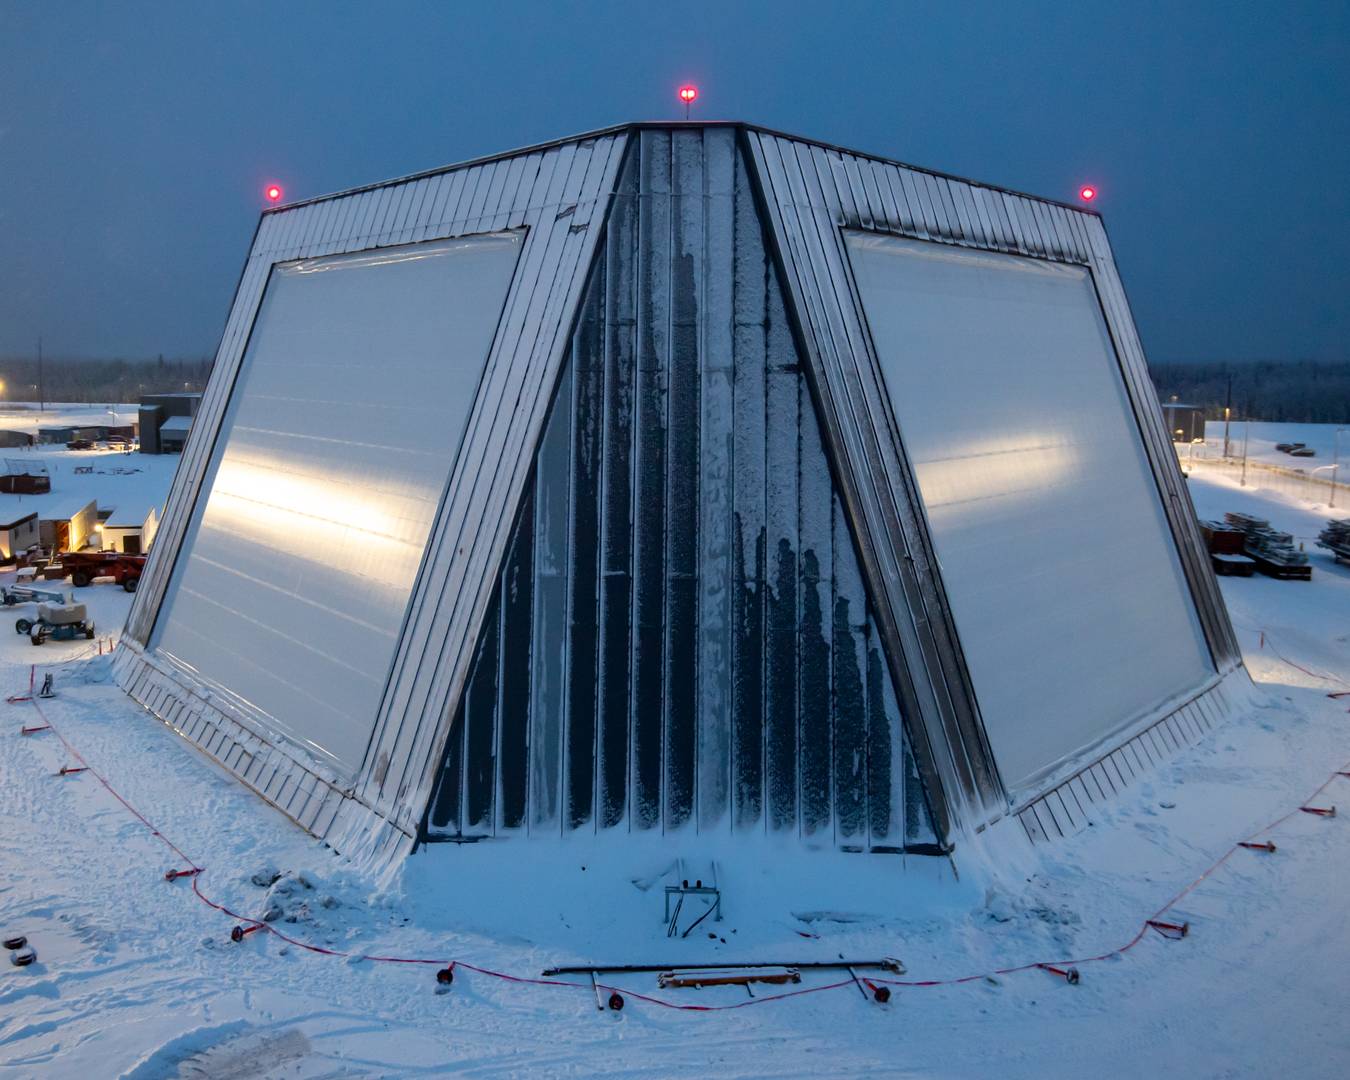 Новая РЛС селекции баллистических целей (LRDR) на полярном объекте Clear Air Force. Аляска, США